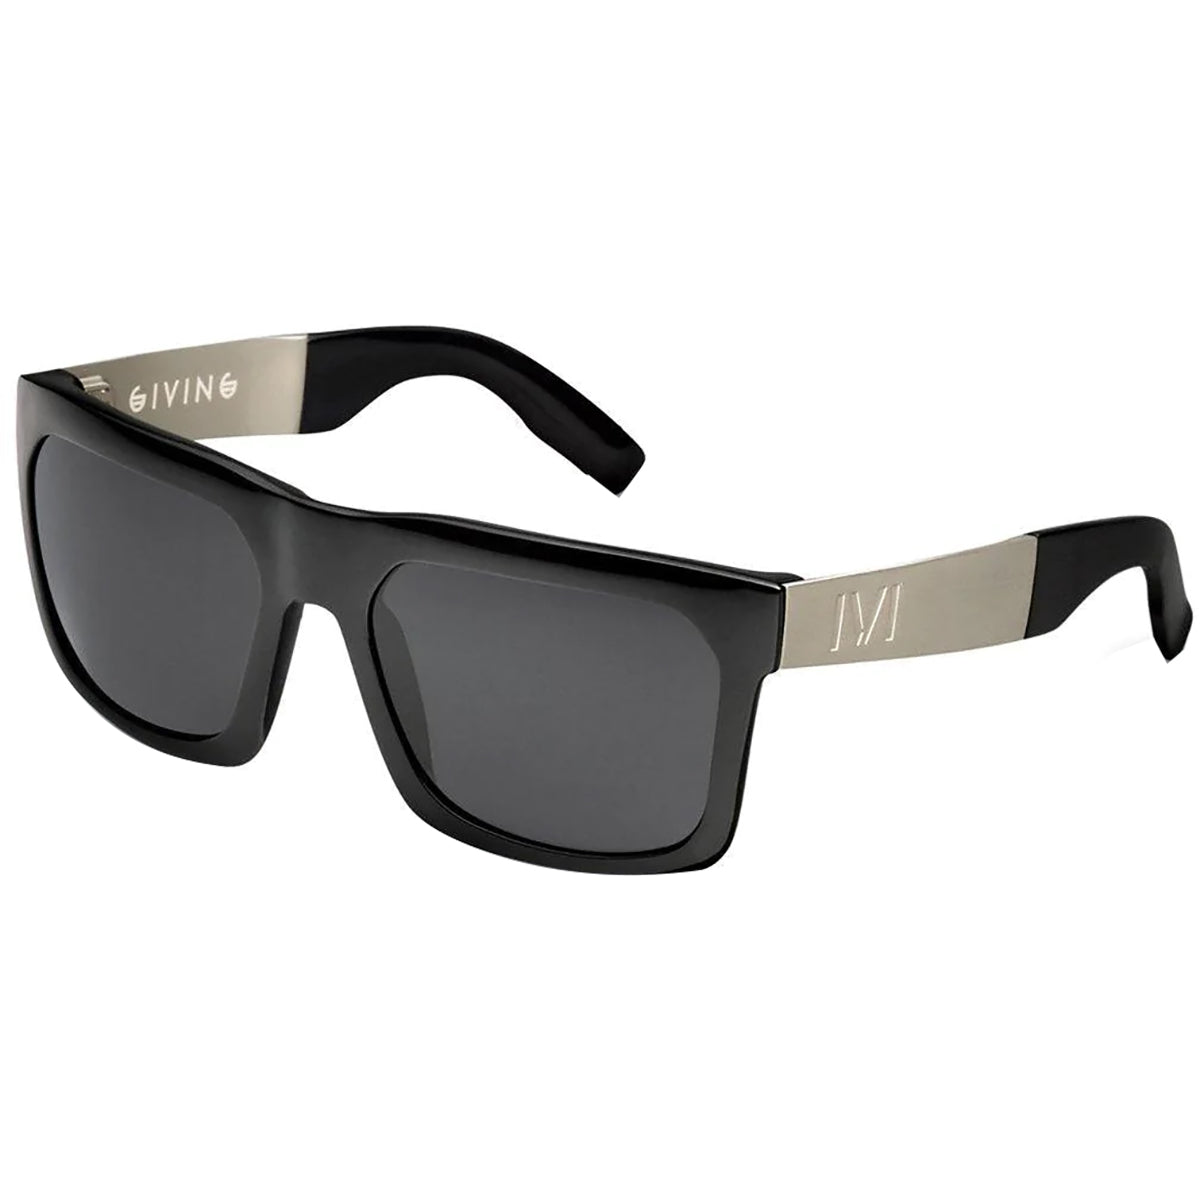 IVI Giving Polished Adult Lifestyle Polarized Sunglasses-03030